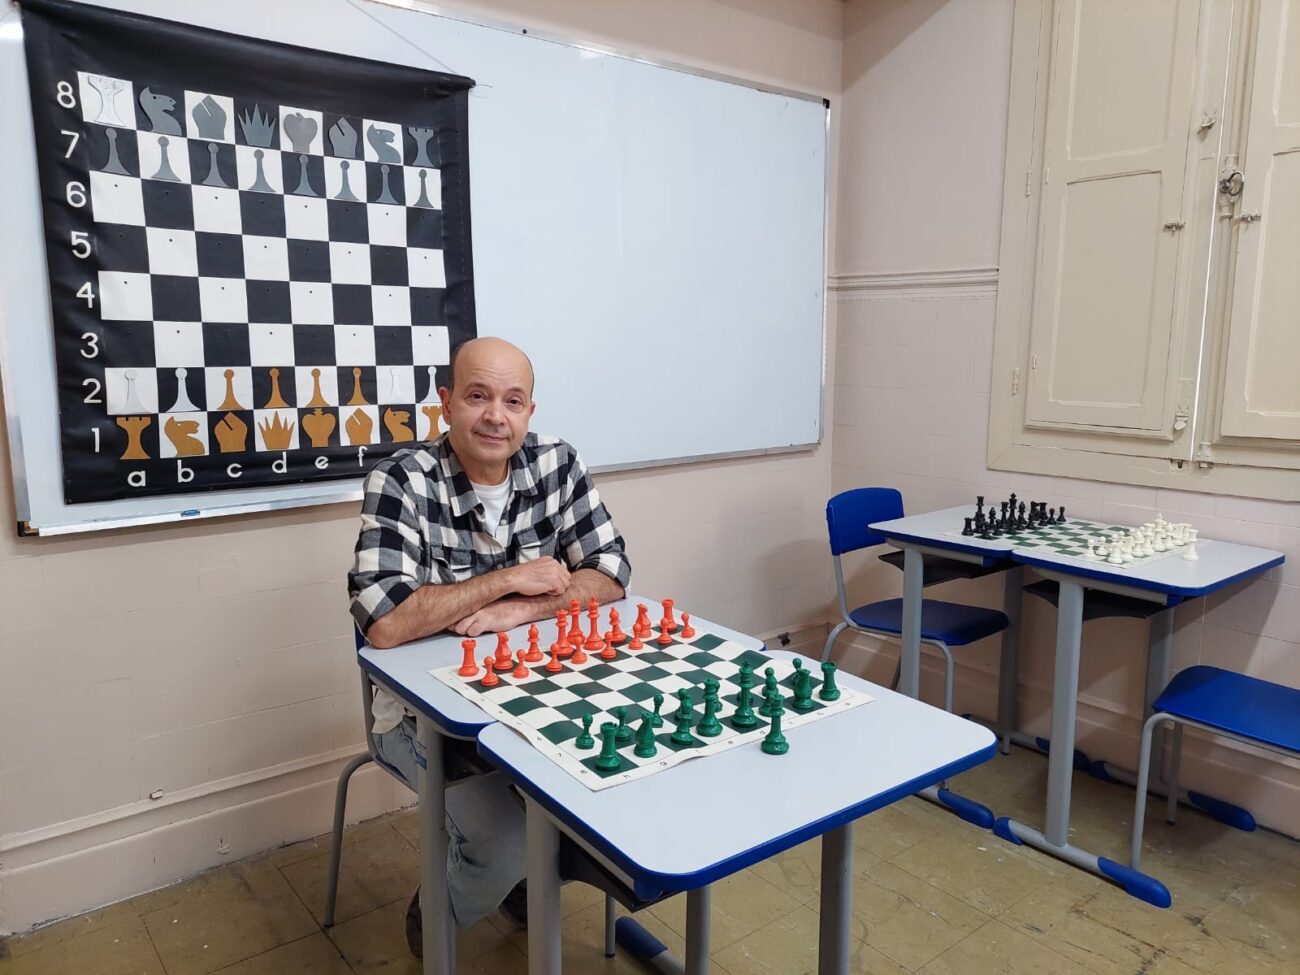 Torneios - Clube de Xadrez de Petrópolis